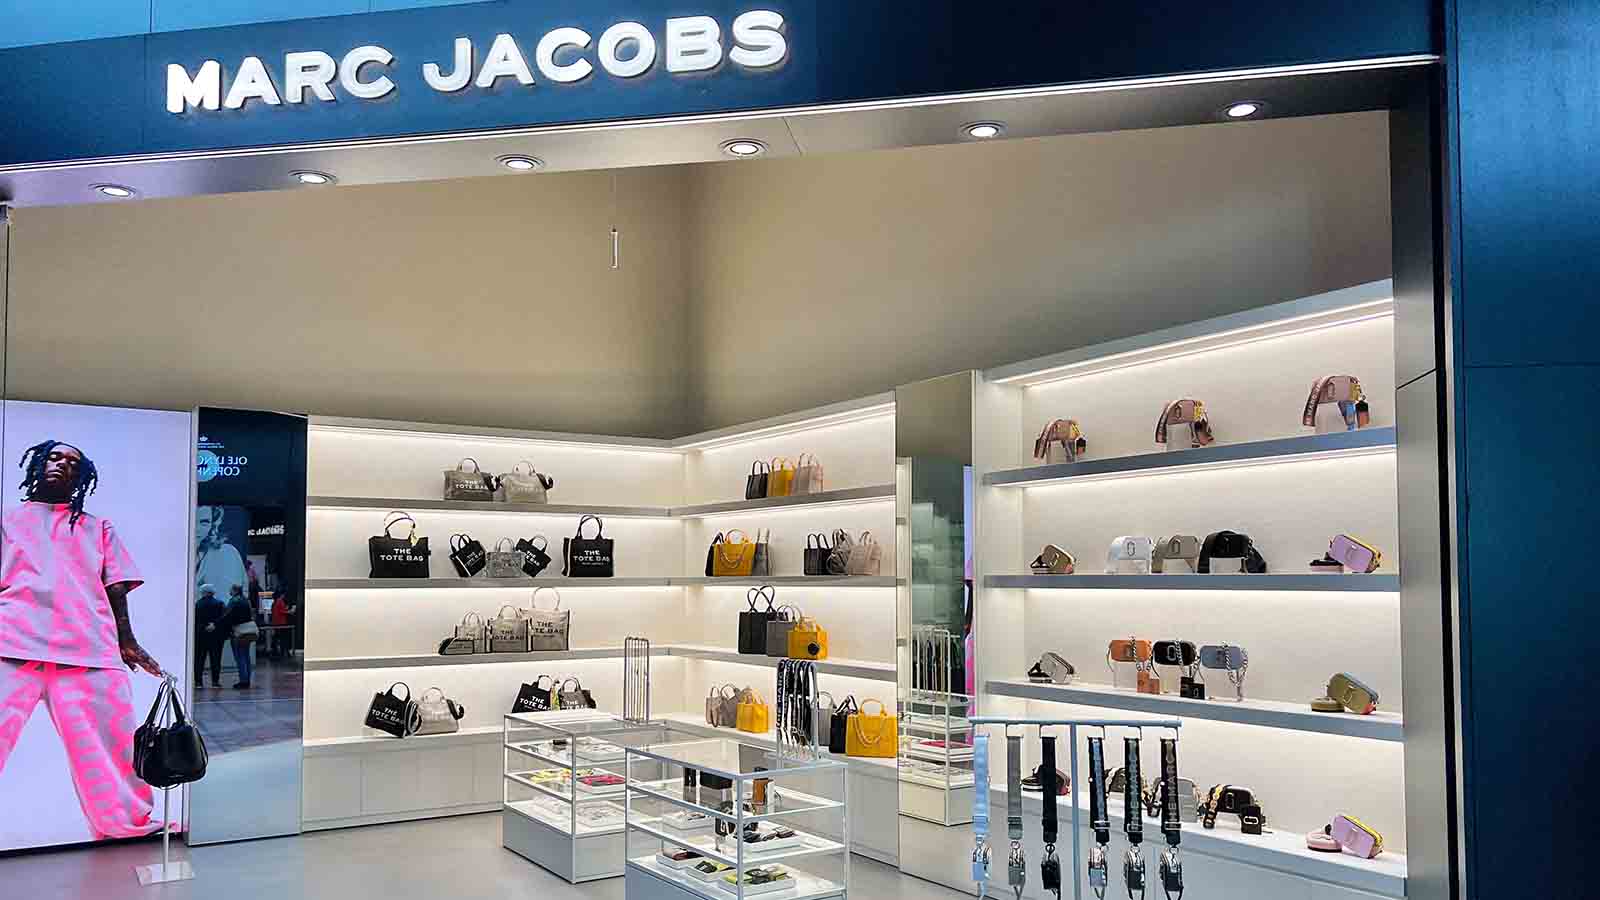 Marc Jacobs Shop Vip Top Sellers | website.jkuat.ac.ke